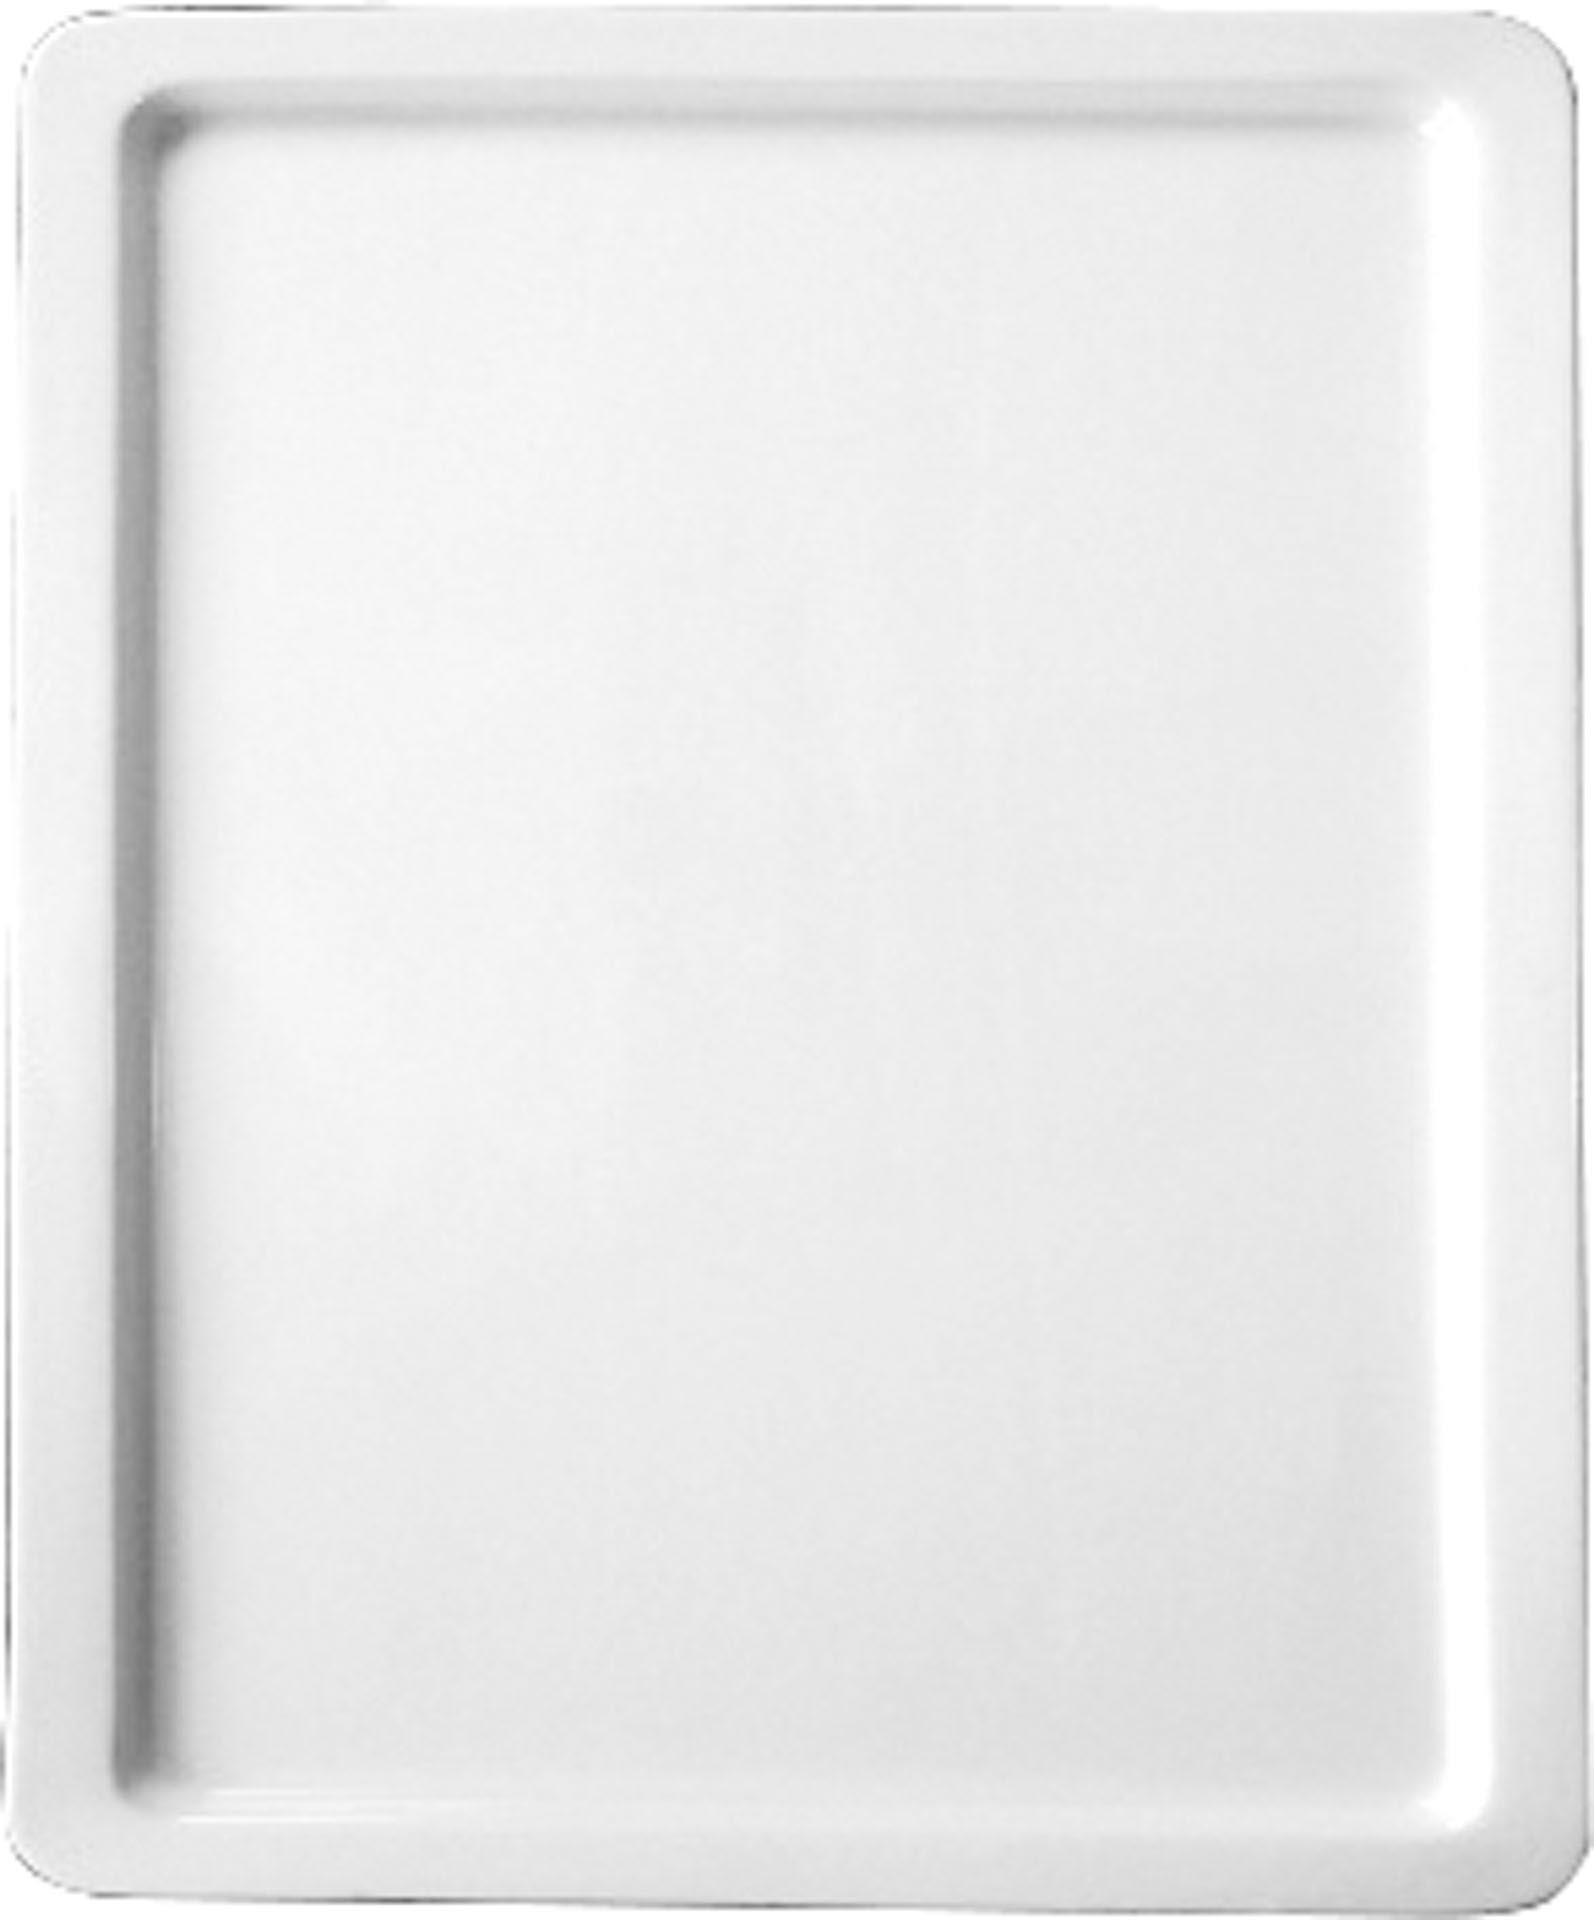 GN-Platte 1/2 - 20 mm, weiß, Porzellan